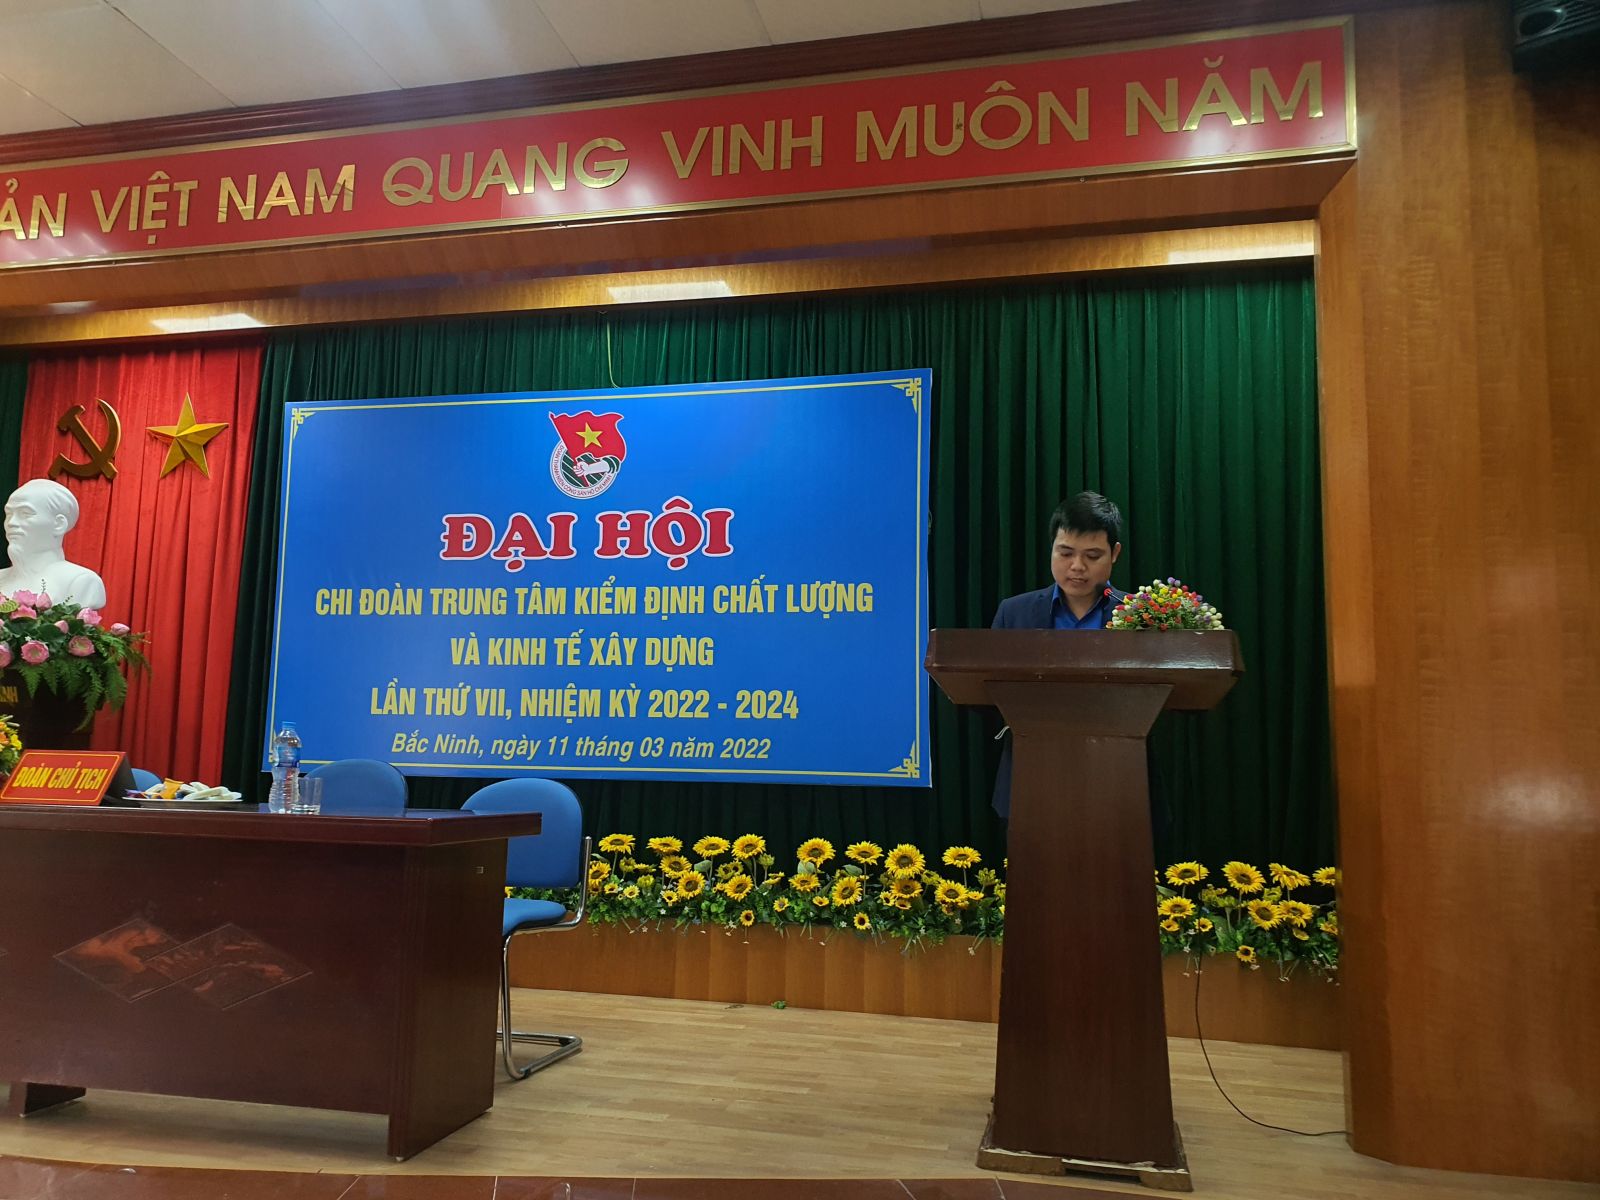 Đồng chí Trịnh Đình Chung – Bí thư Chi đoàn phát biểu tại Đại hộ Đoàn thanh niên Chi đoàn Trung tâm khóa VII